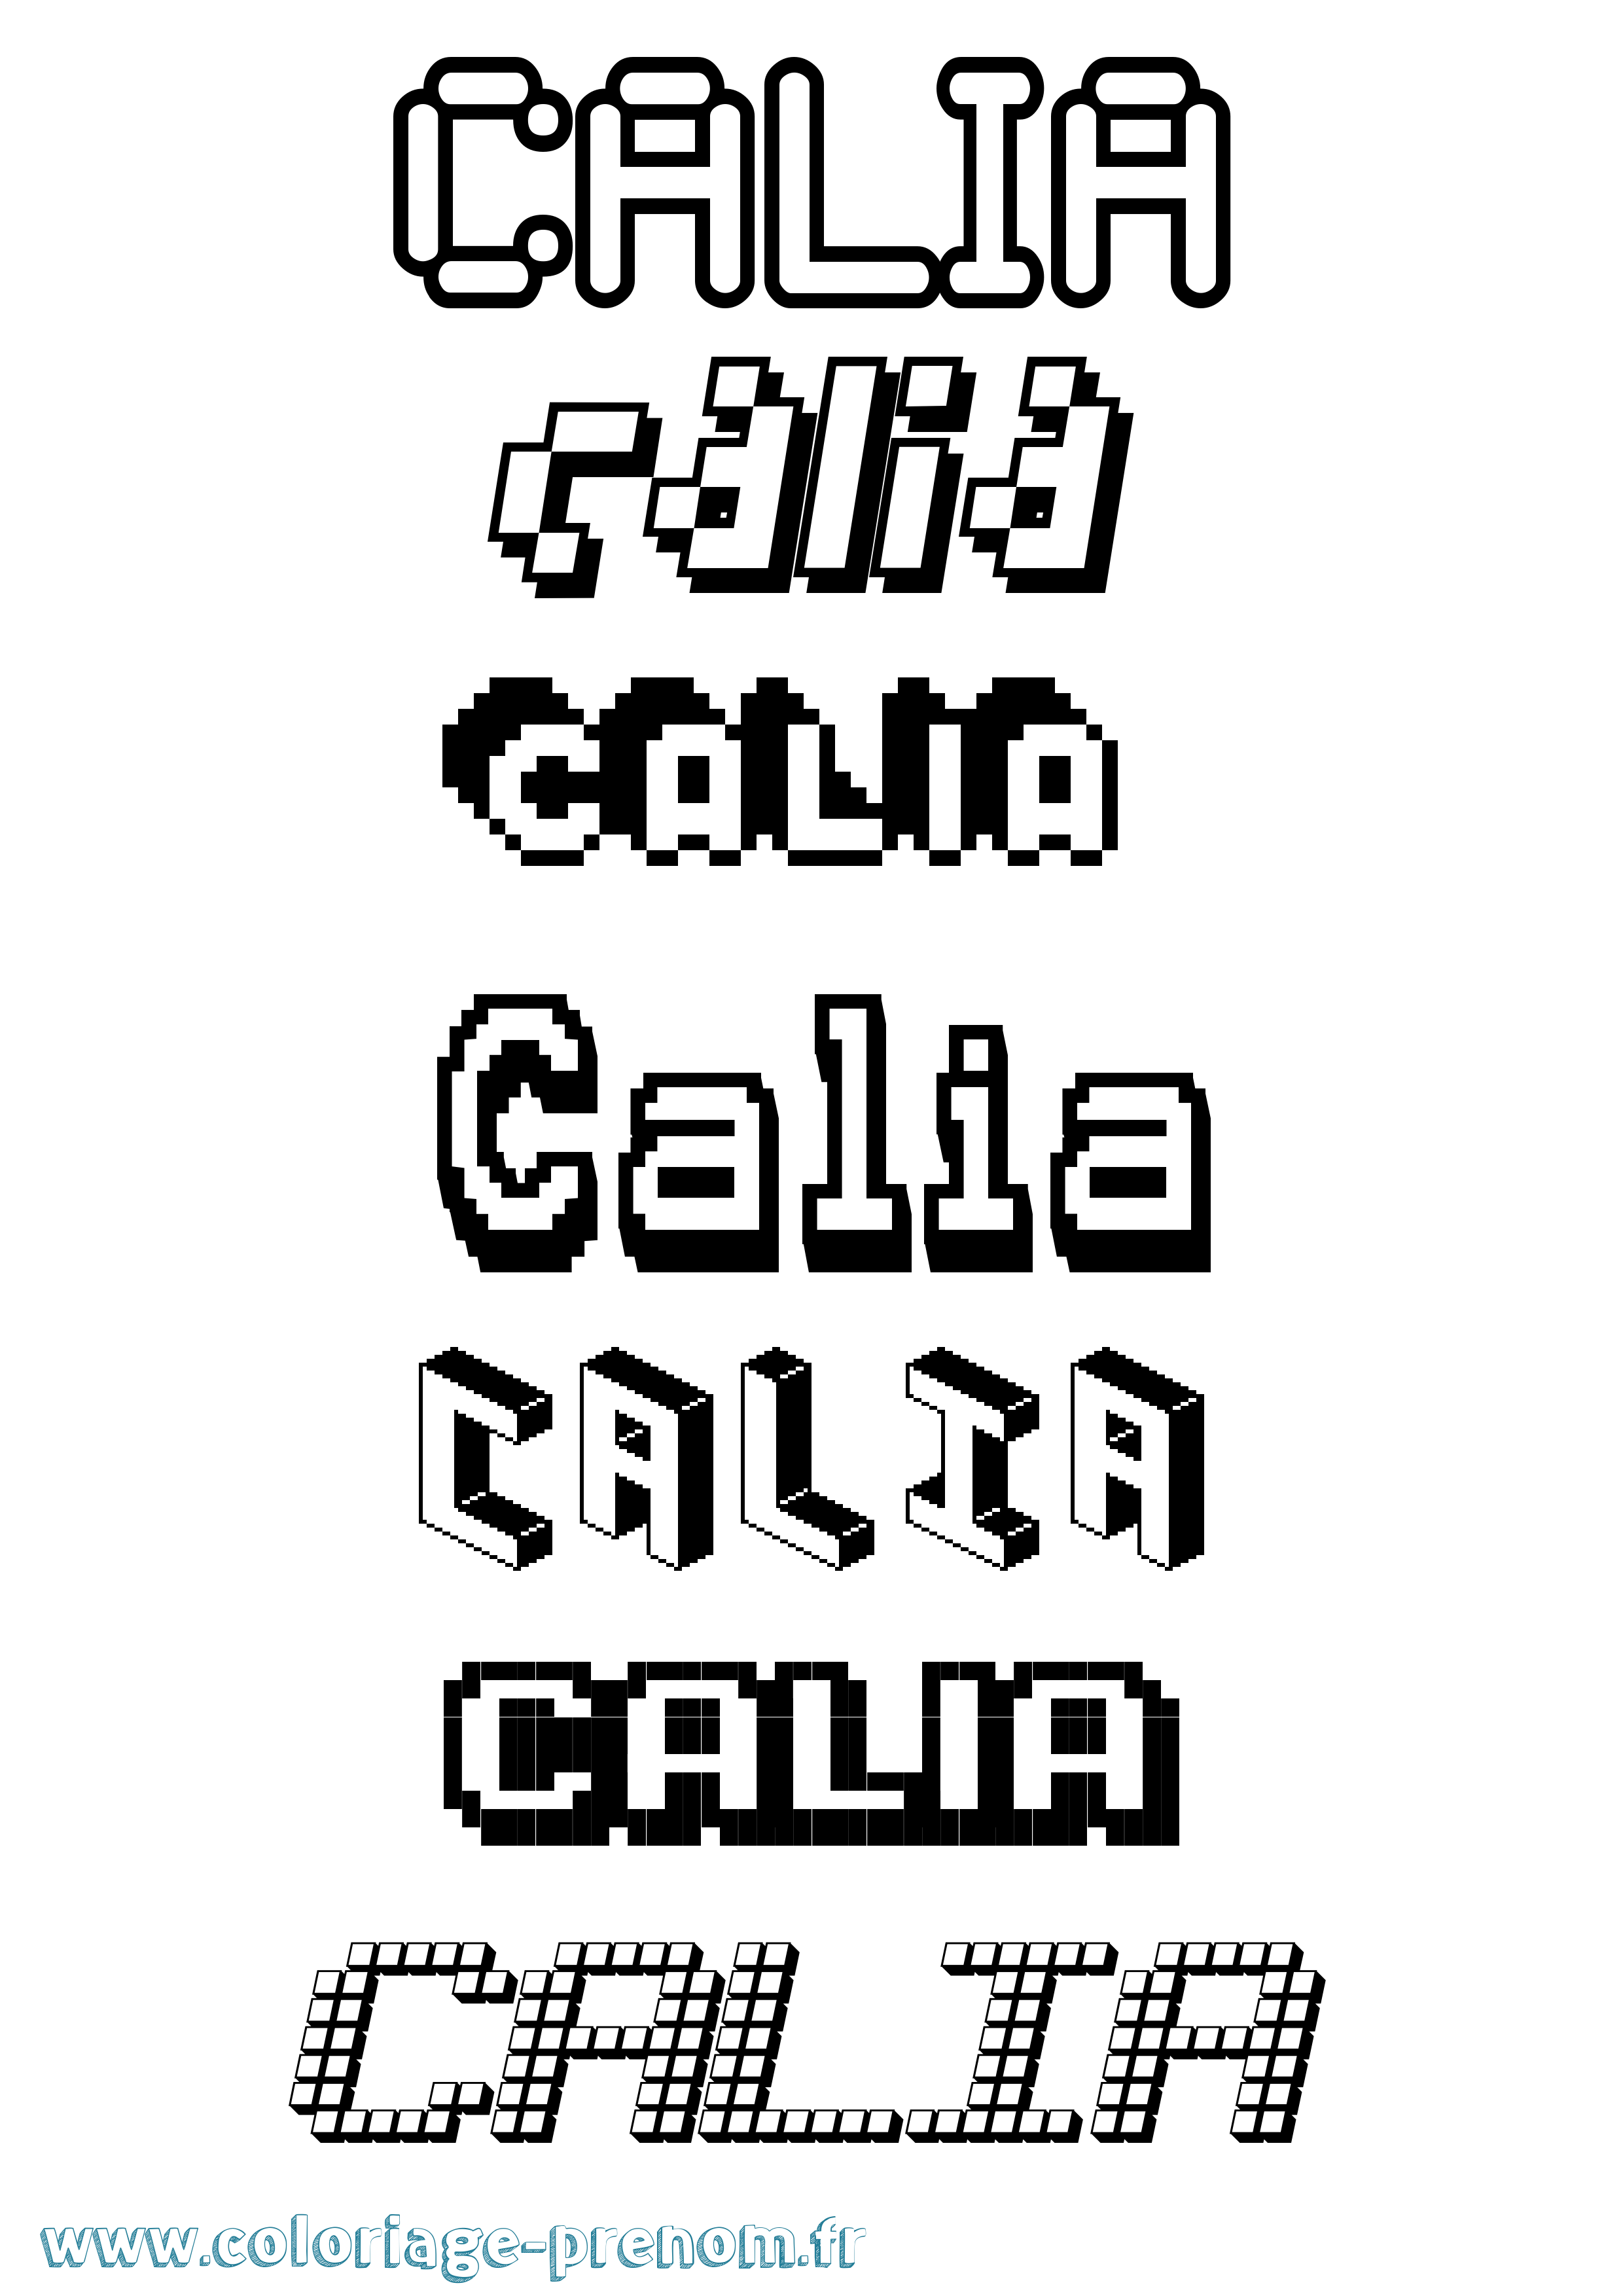 Coloriage prénom Calia Pixel